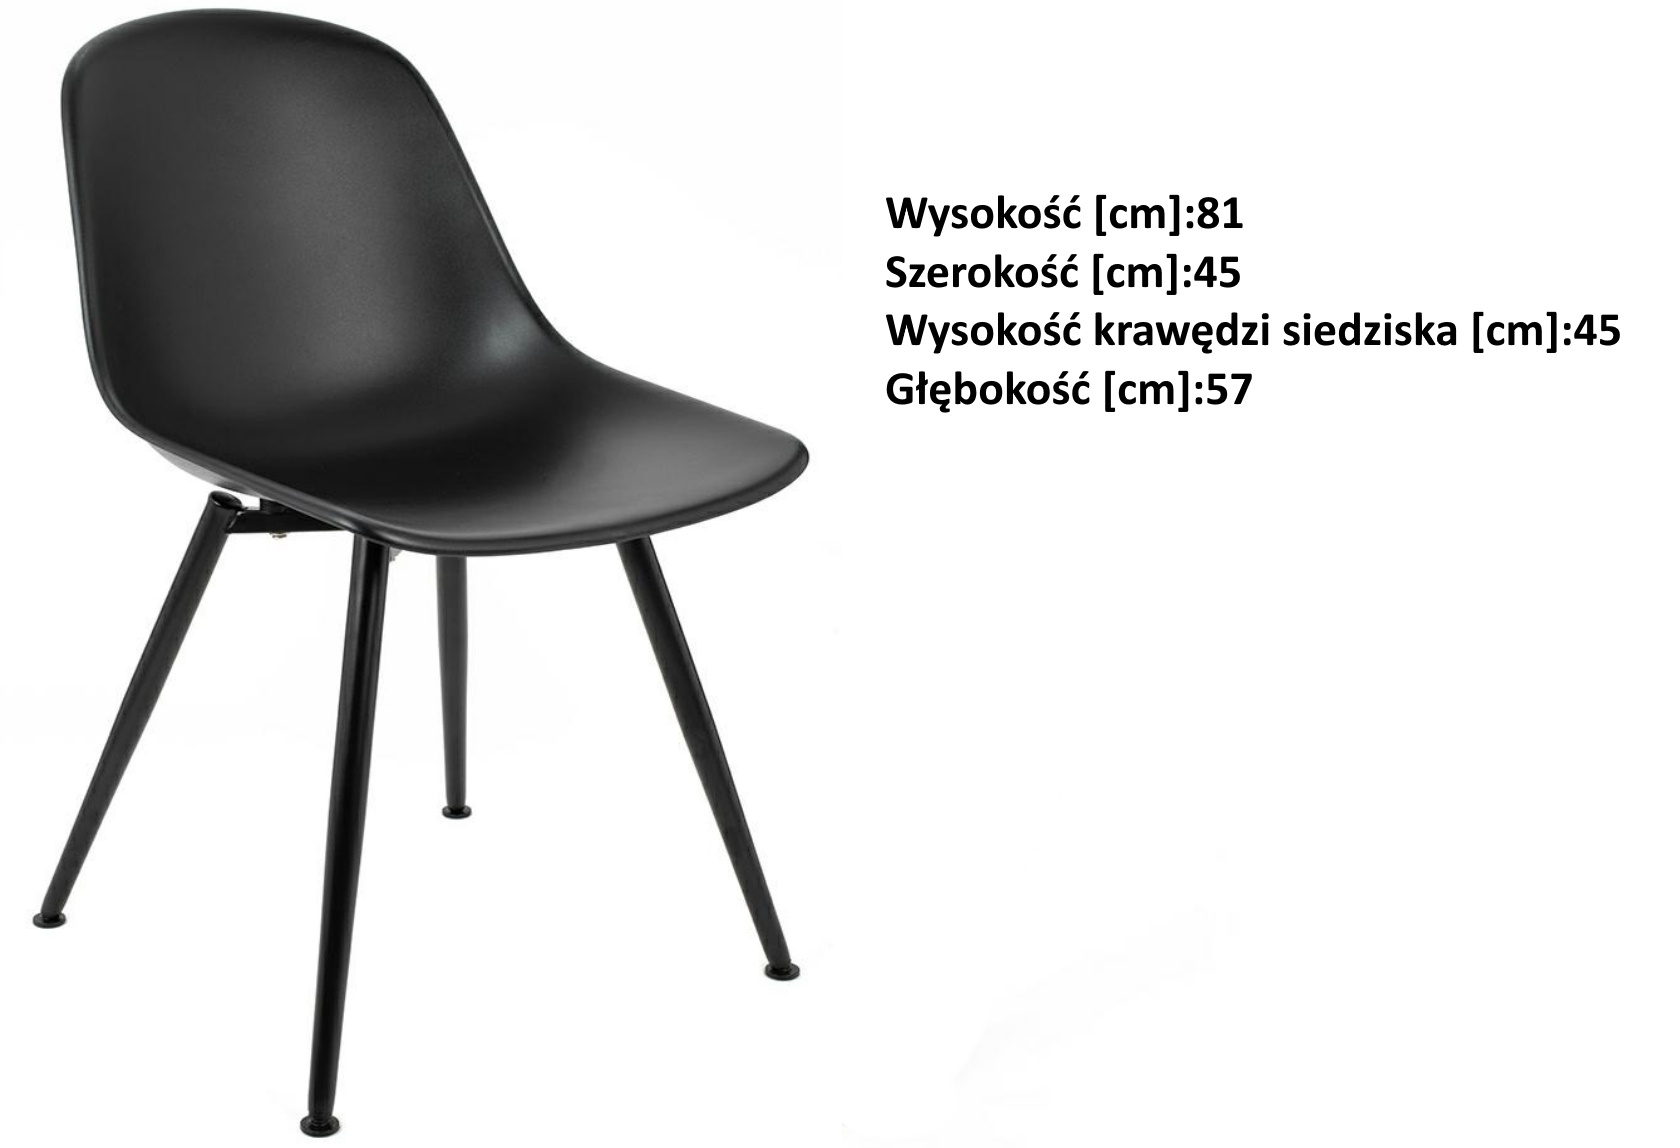 krzesło w stylu skandynawskim daw, wymiary